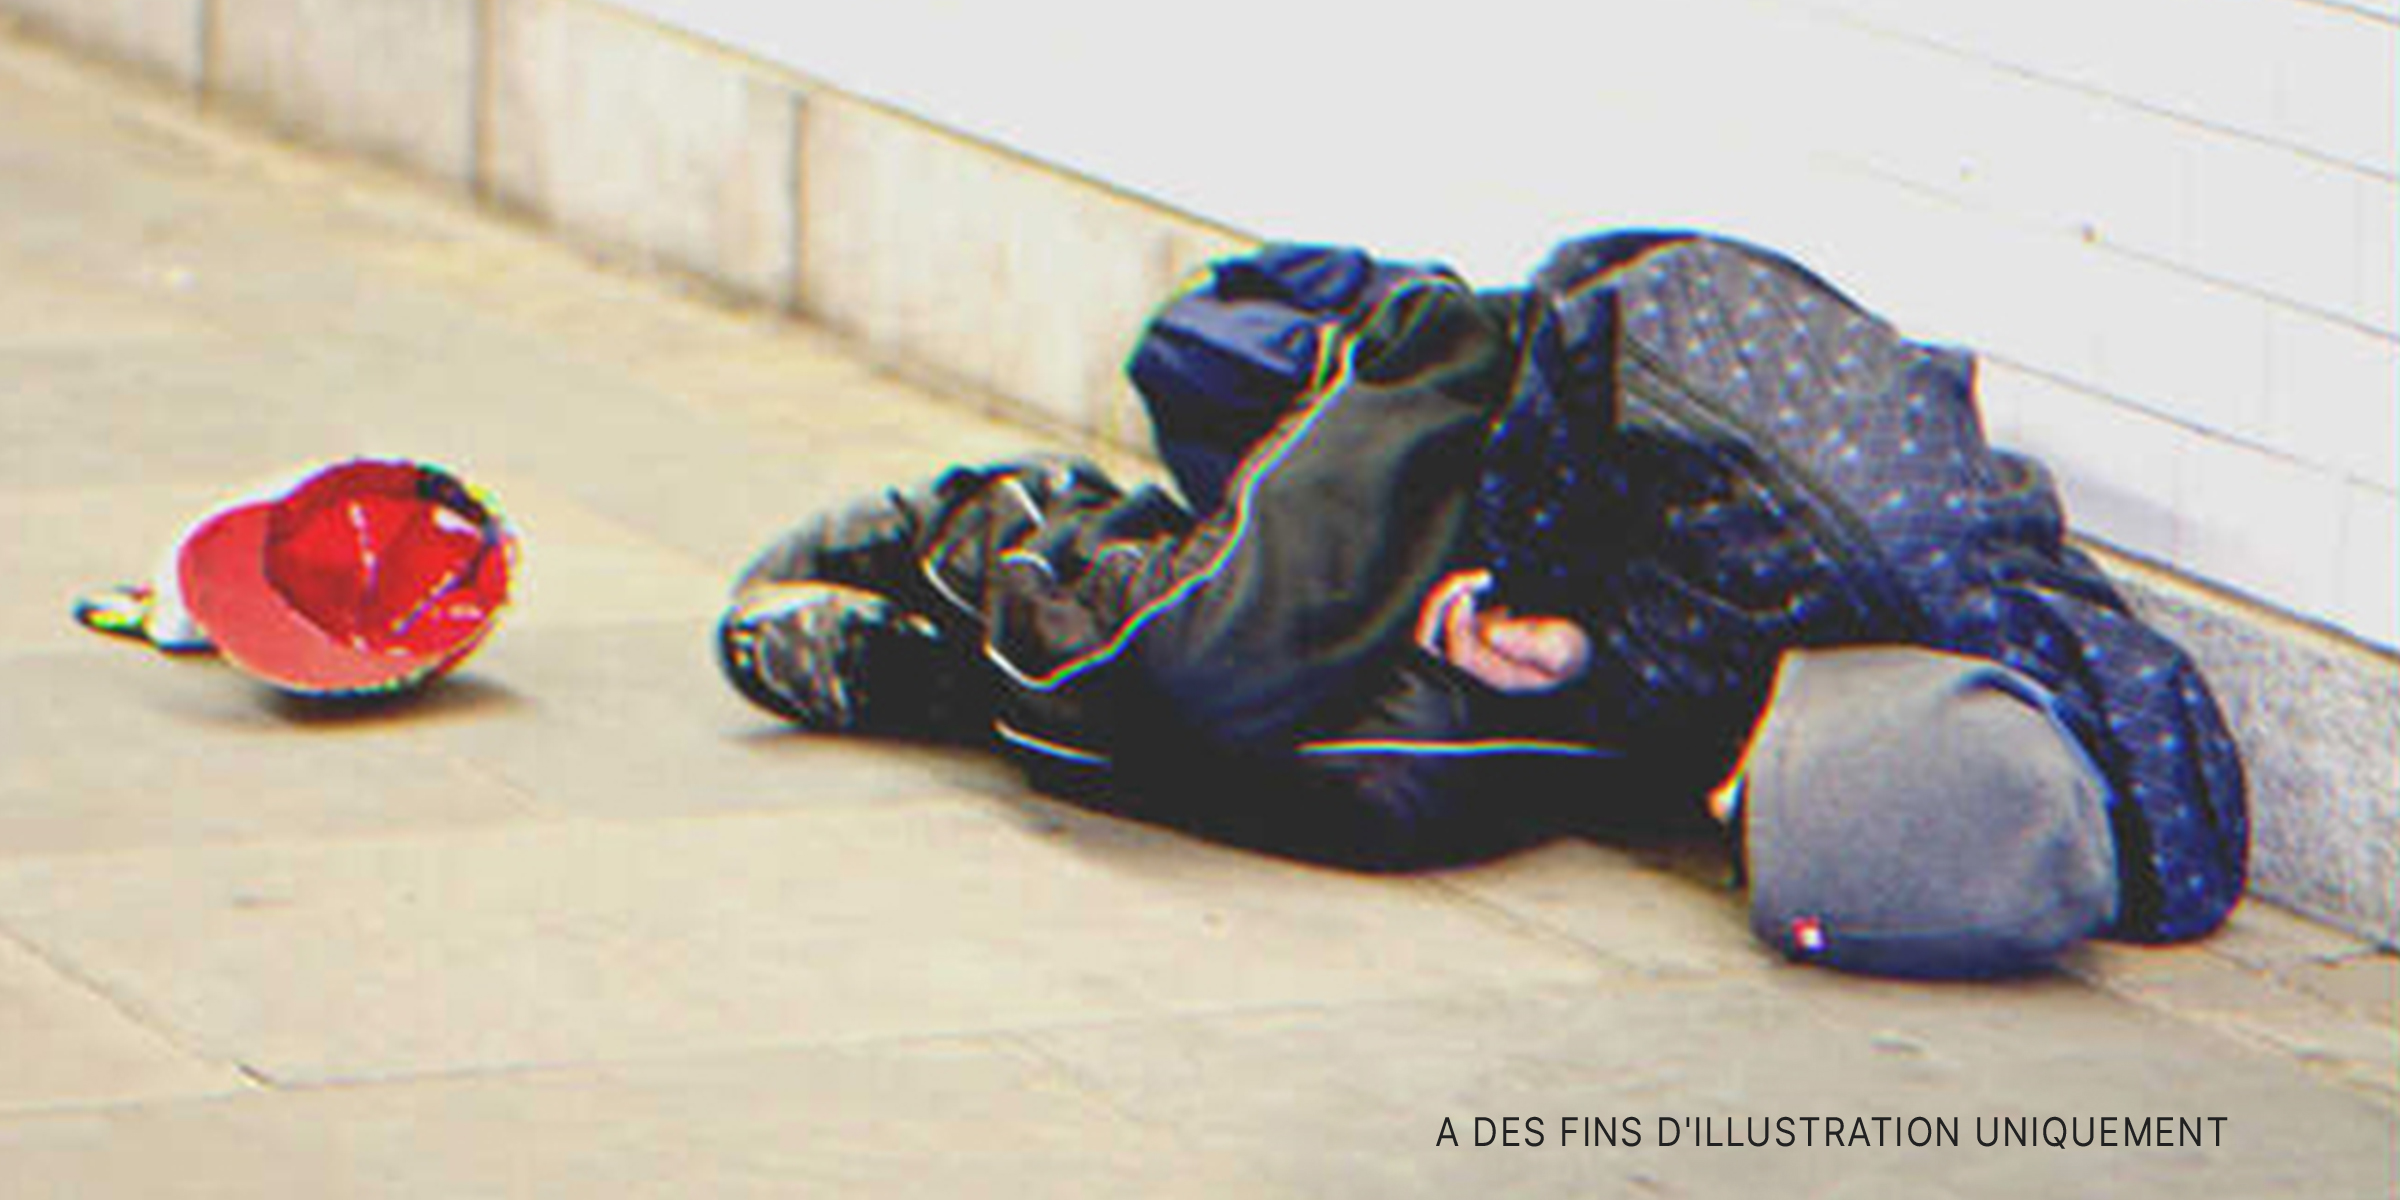 Un mendiant couché dans la rue | Source : Flickr / MJ Klaver